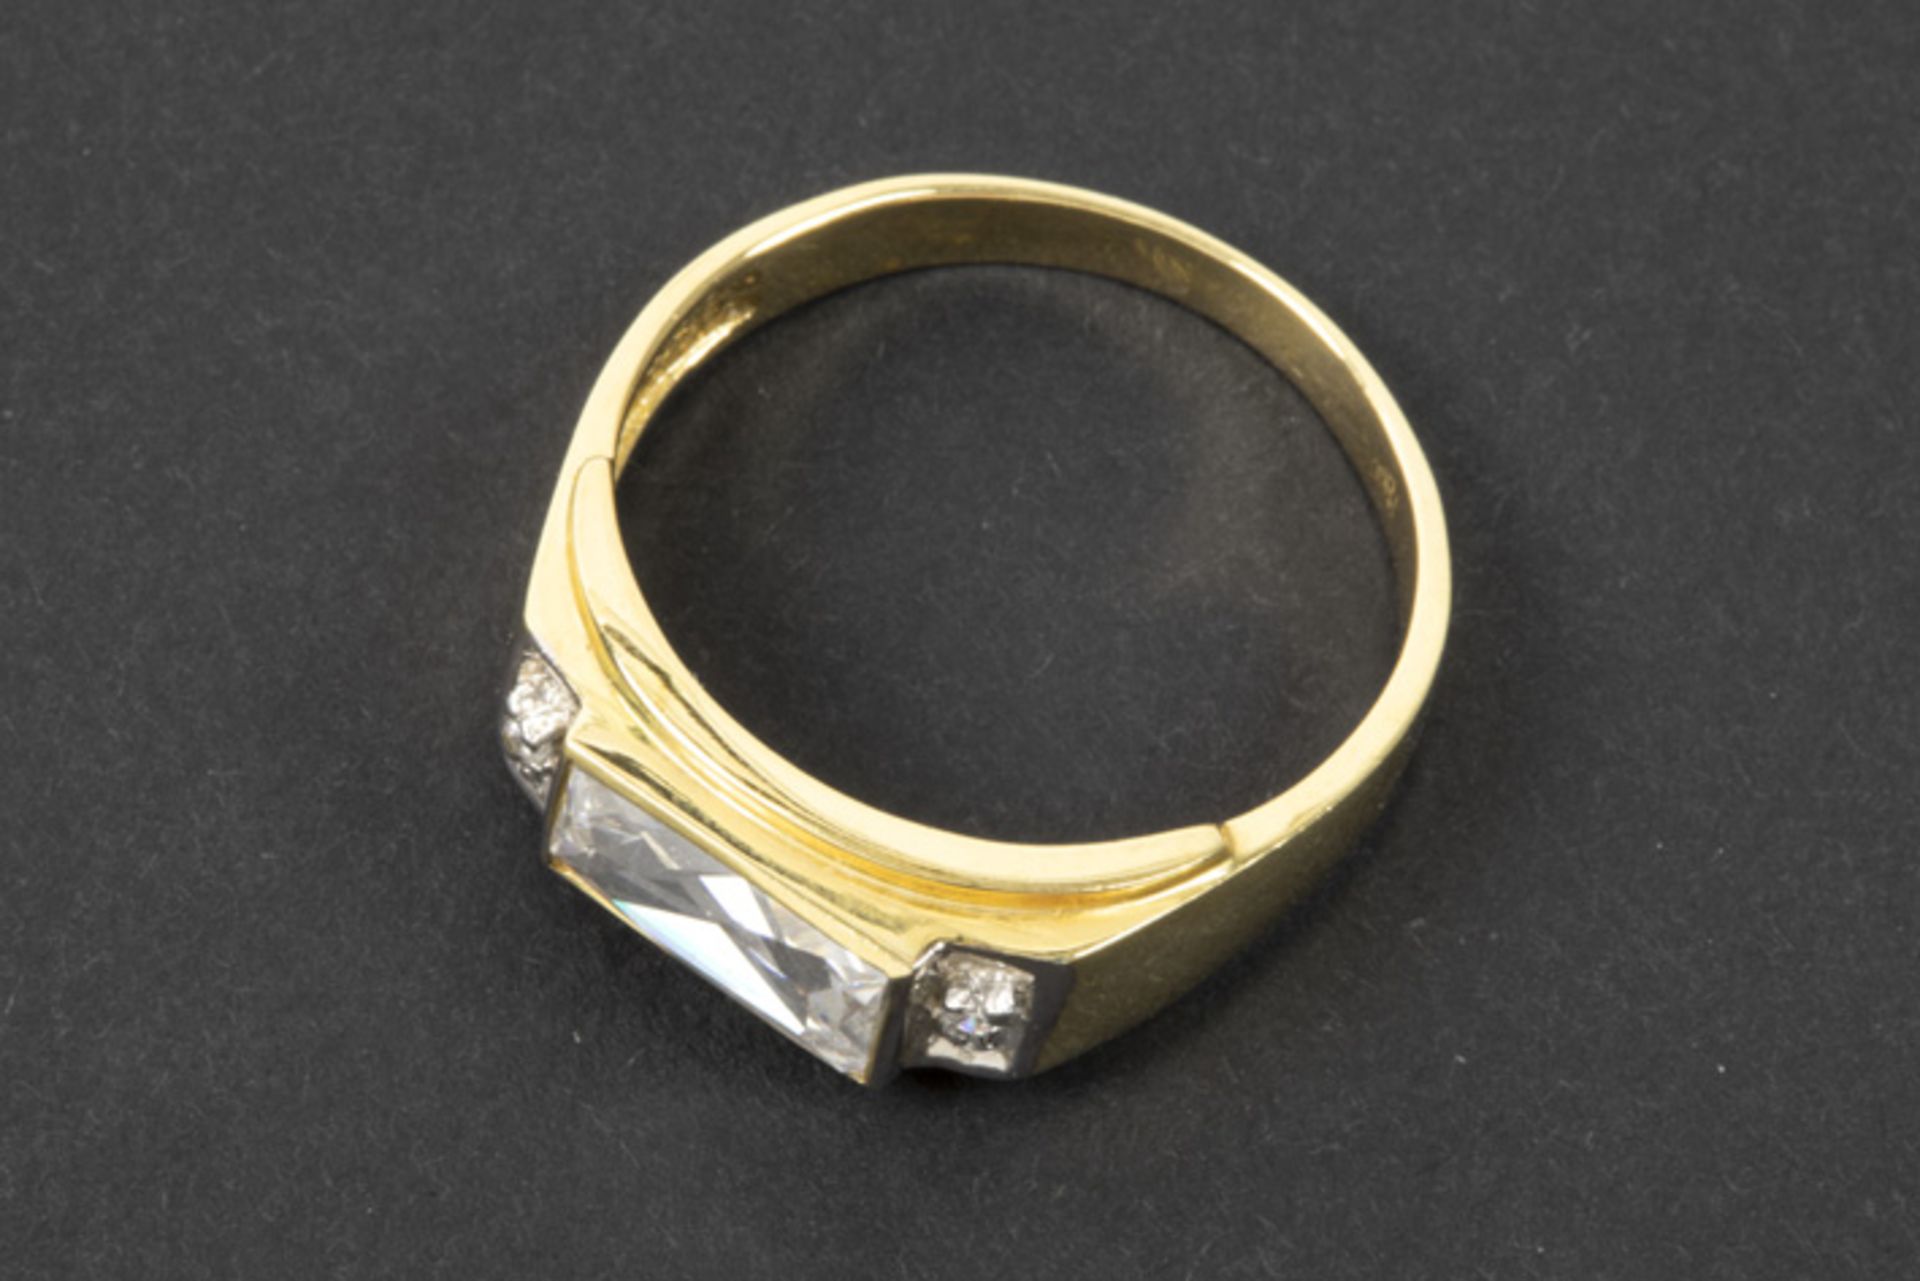 ring in yellow gold (14 carat) with a zircon || Ring in geelgoud (14 karaat) bezet met een zirkoon - Image 2 of 2